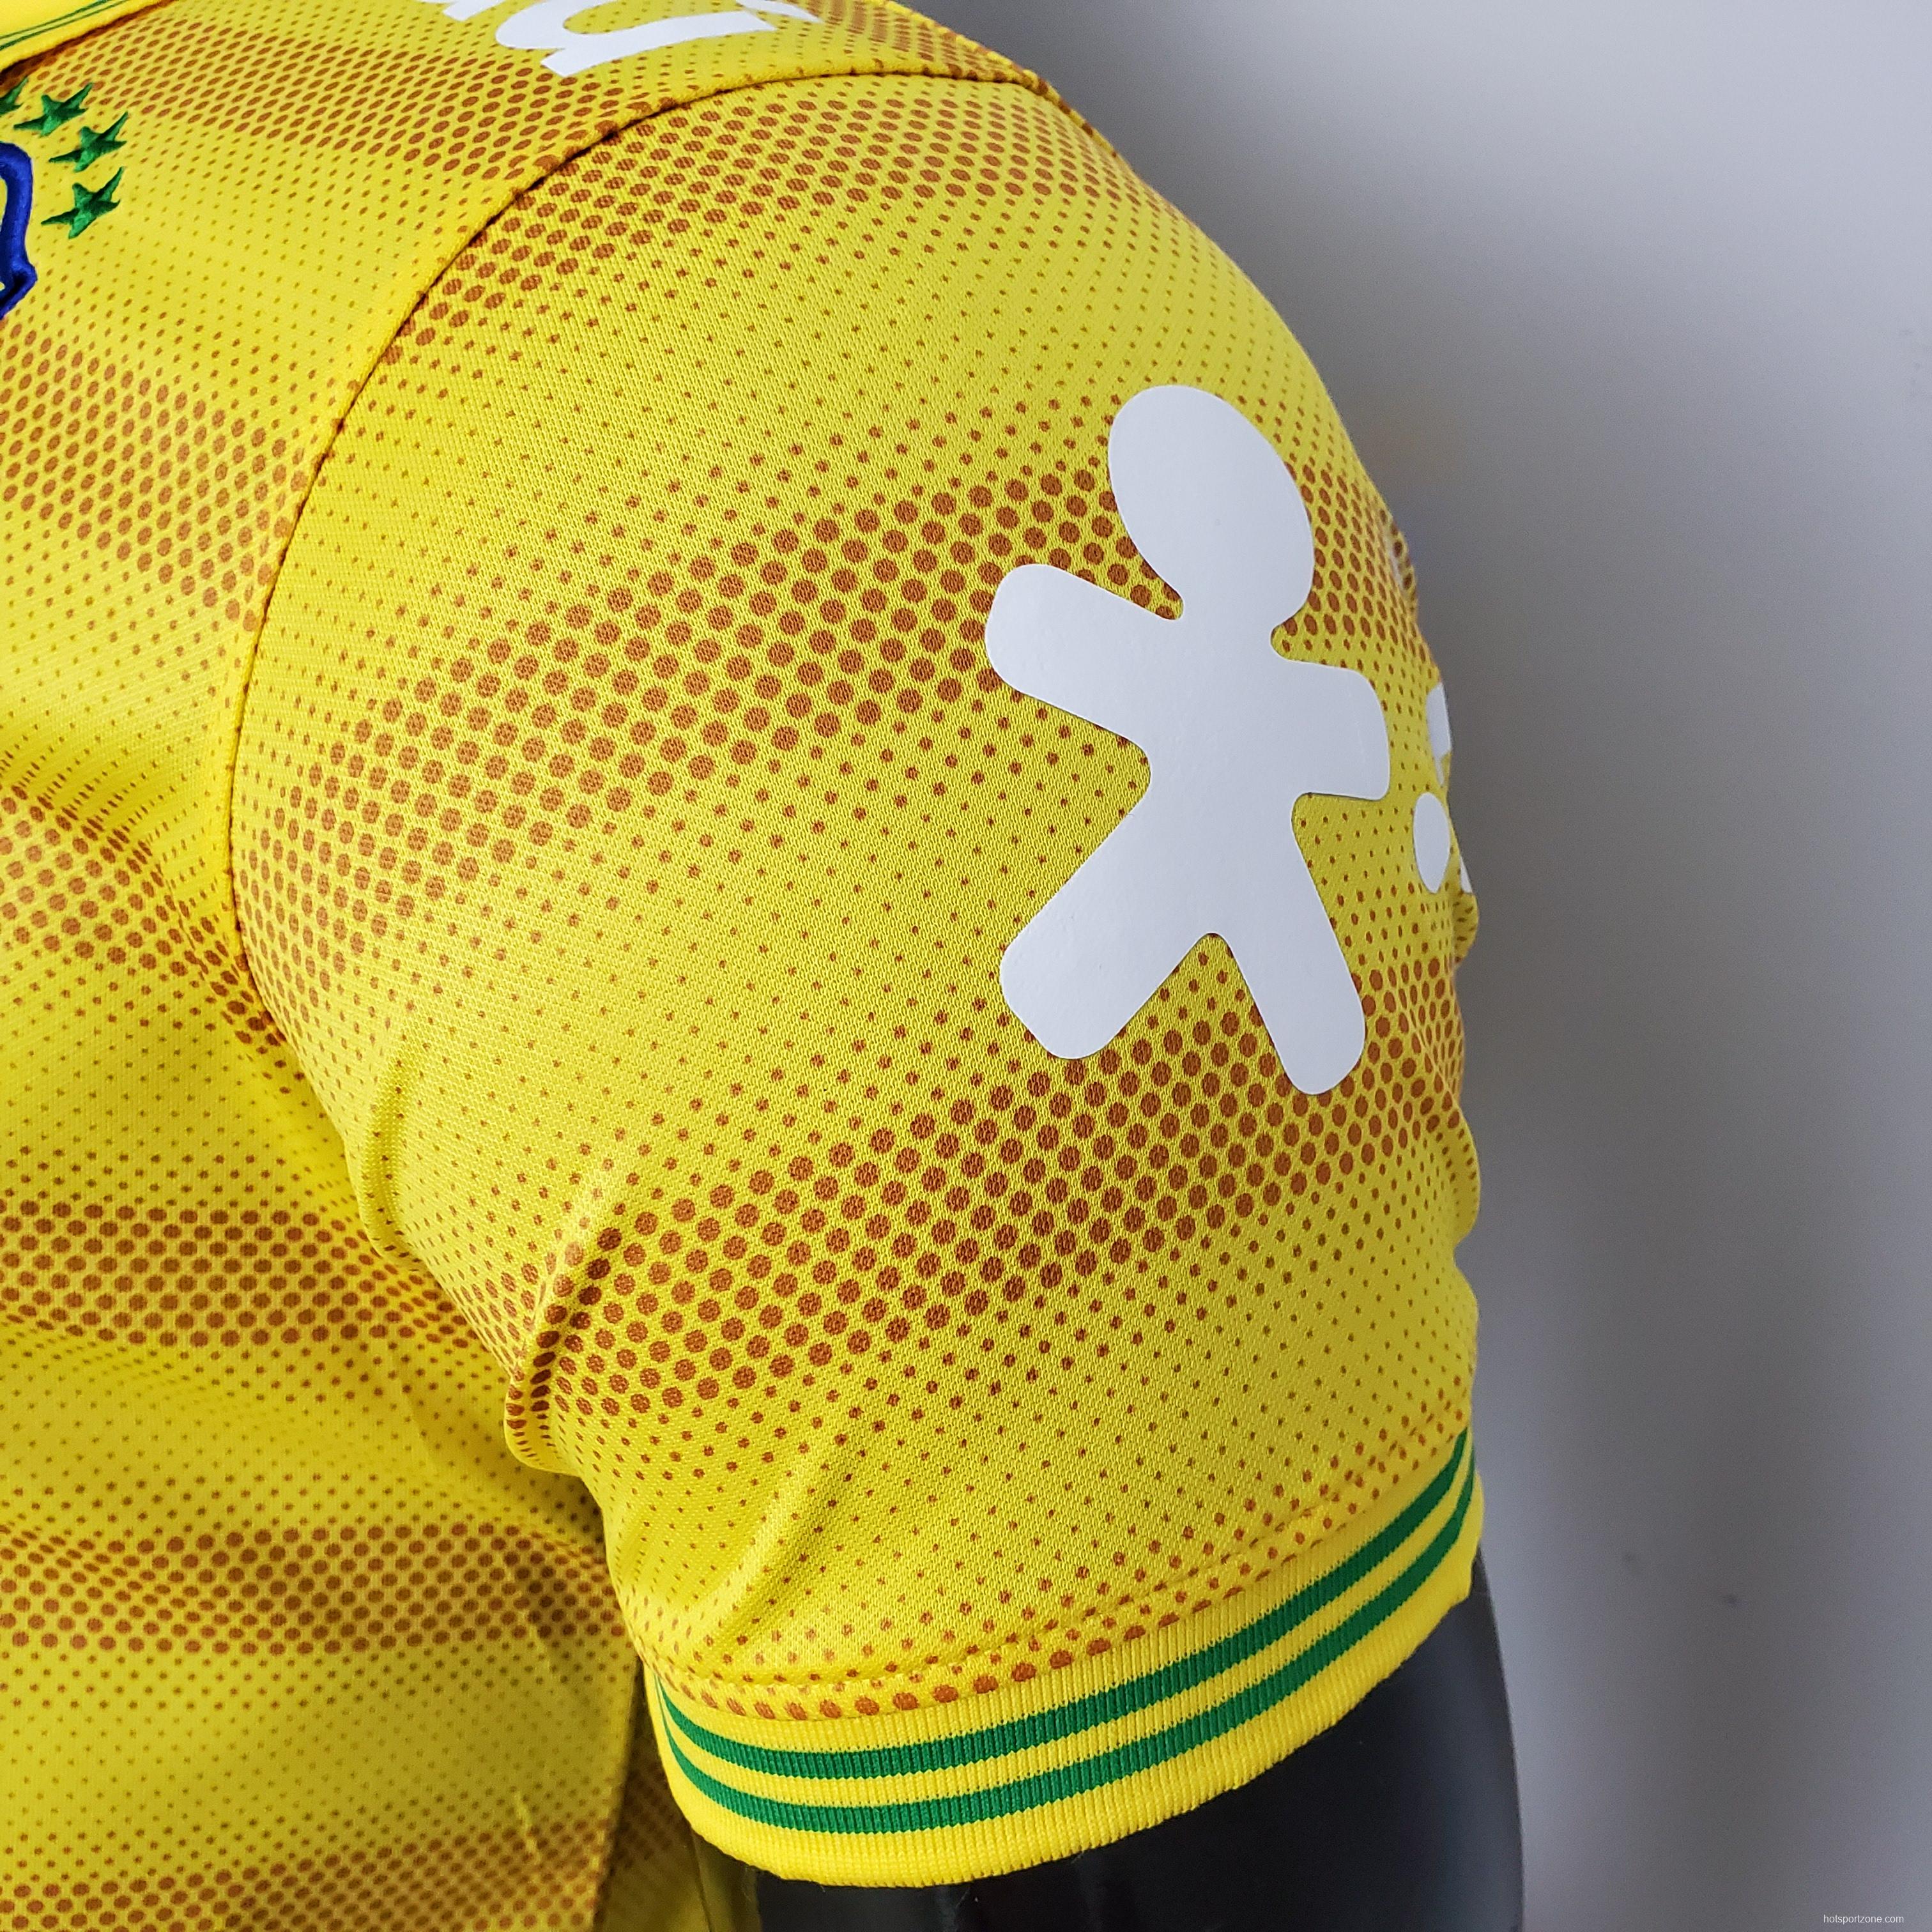 Brazil POLO Yellow Stripe Soccer Jersey